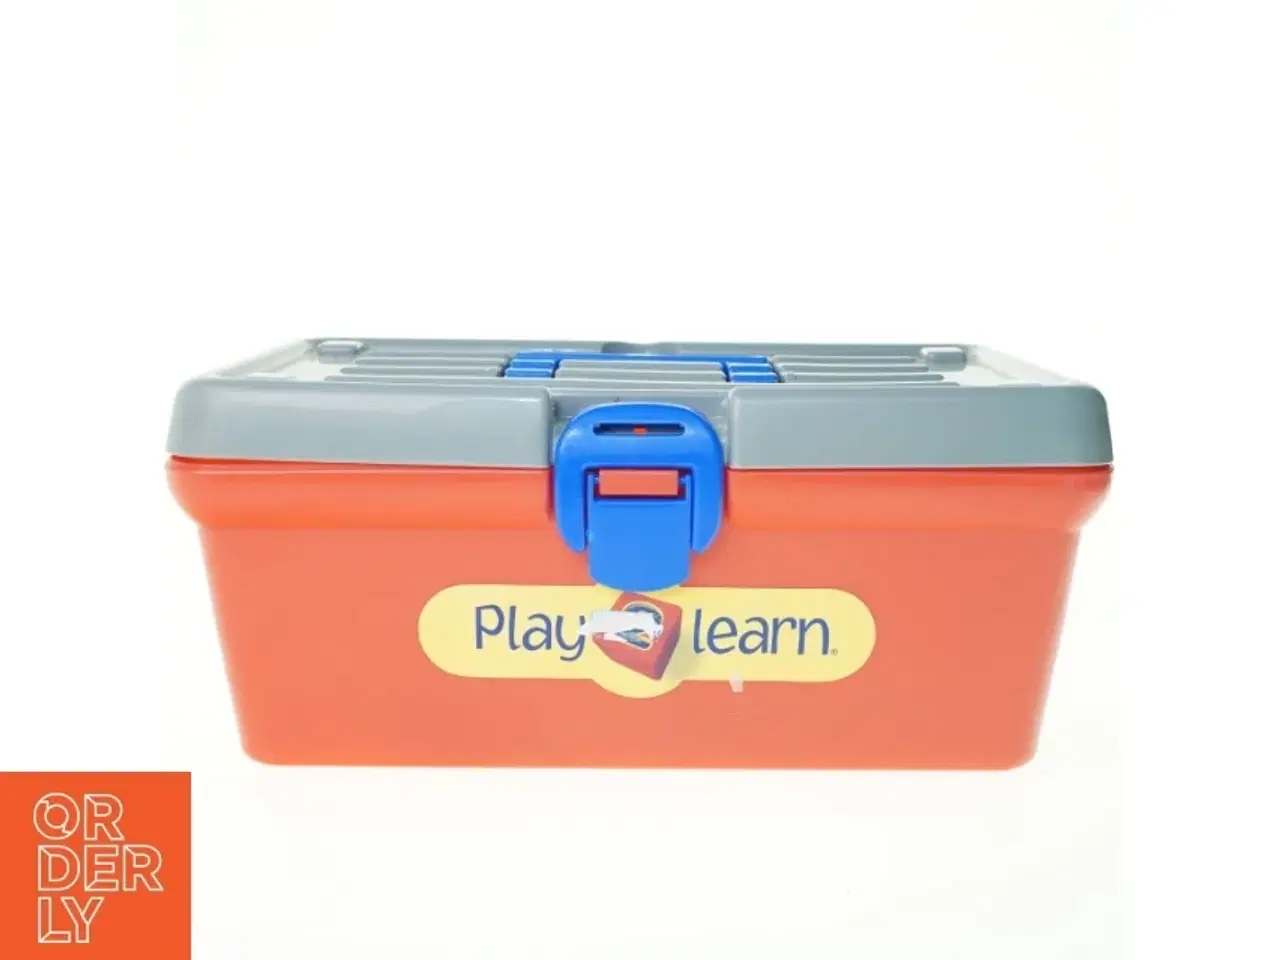 Billede 2 - Værktøjs kasse fra Play 2 Learn (str. 35 x 17 cm)